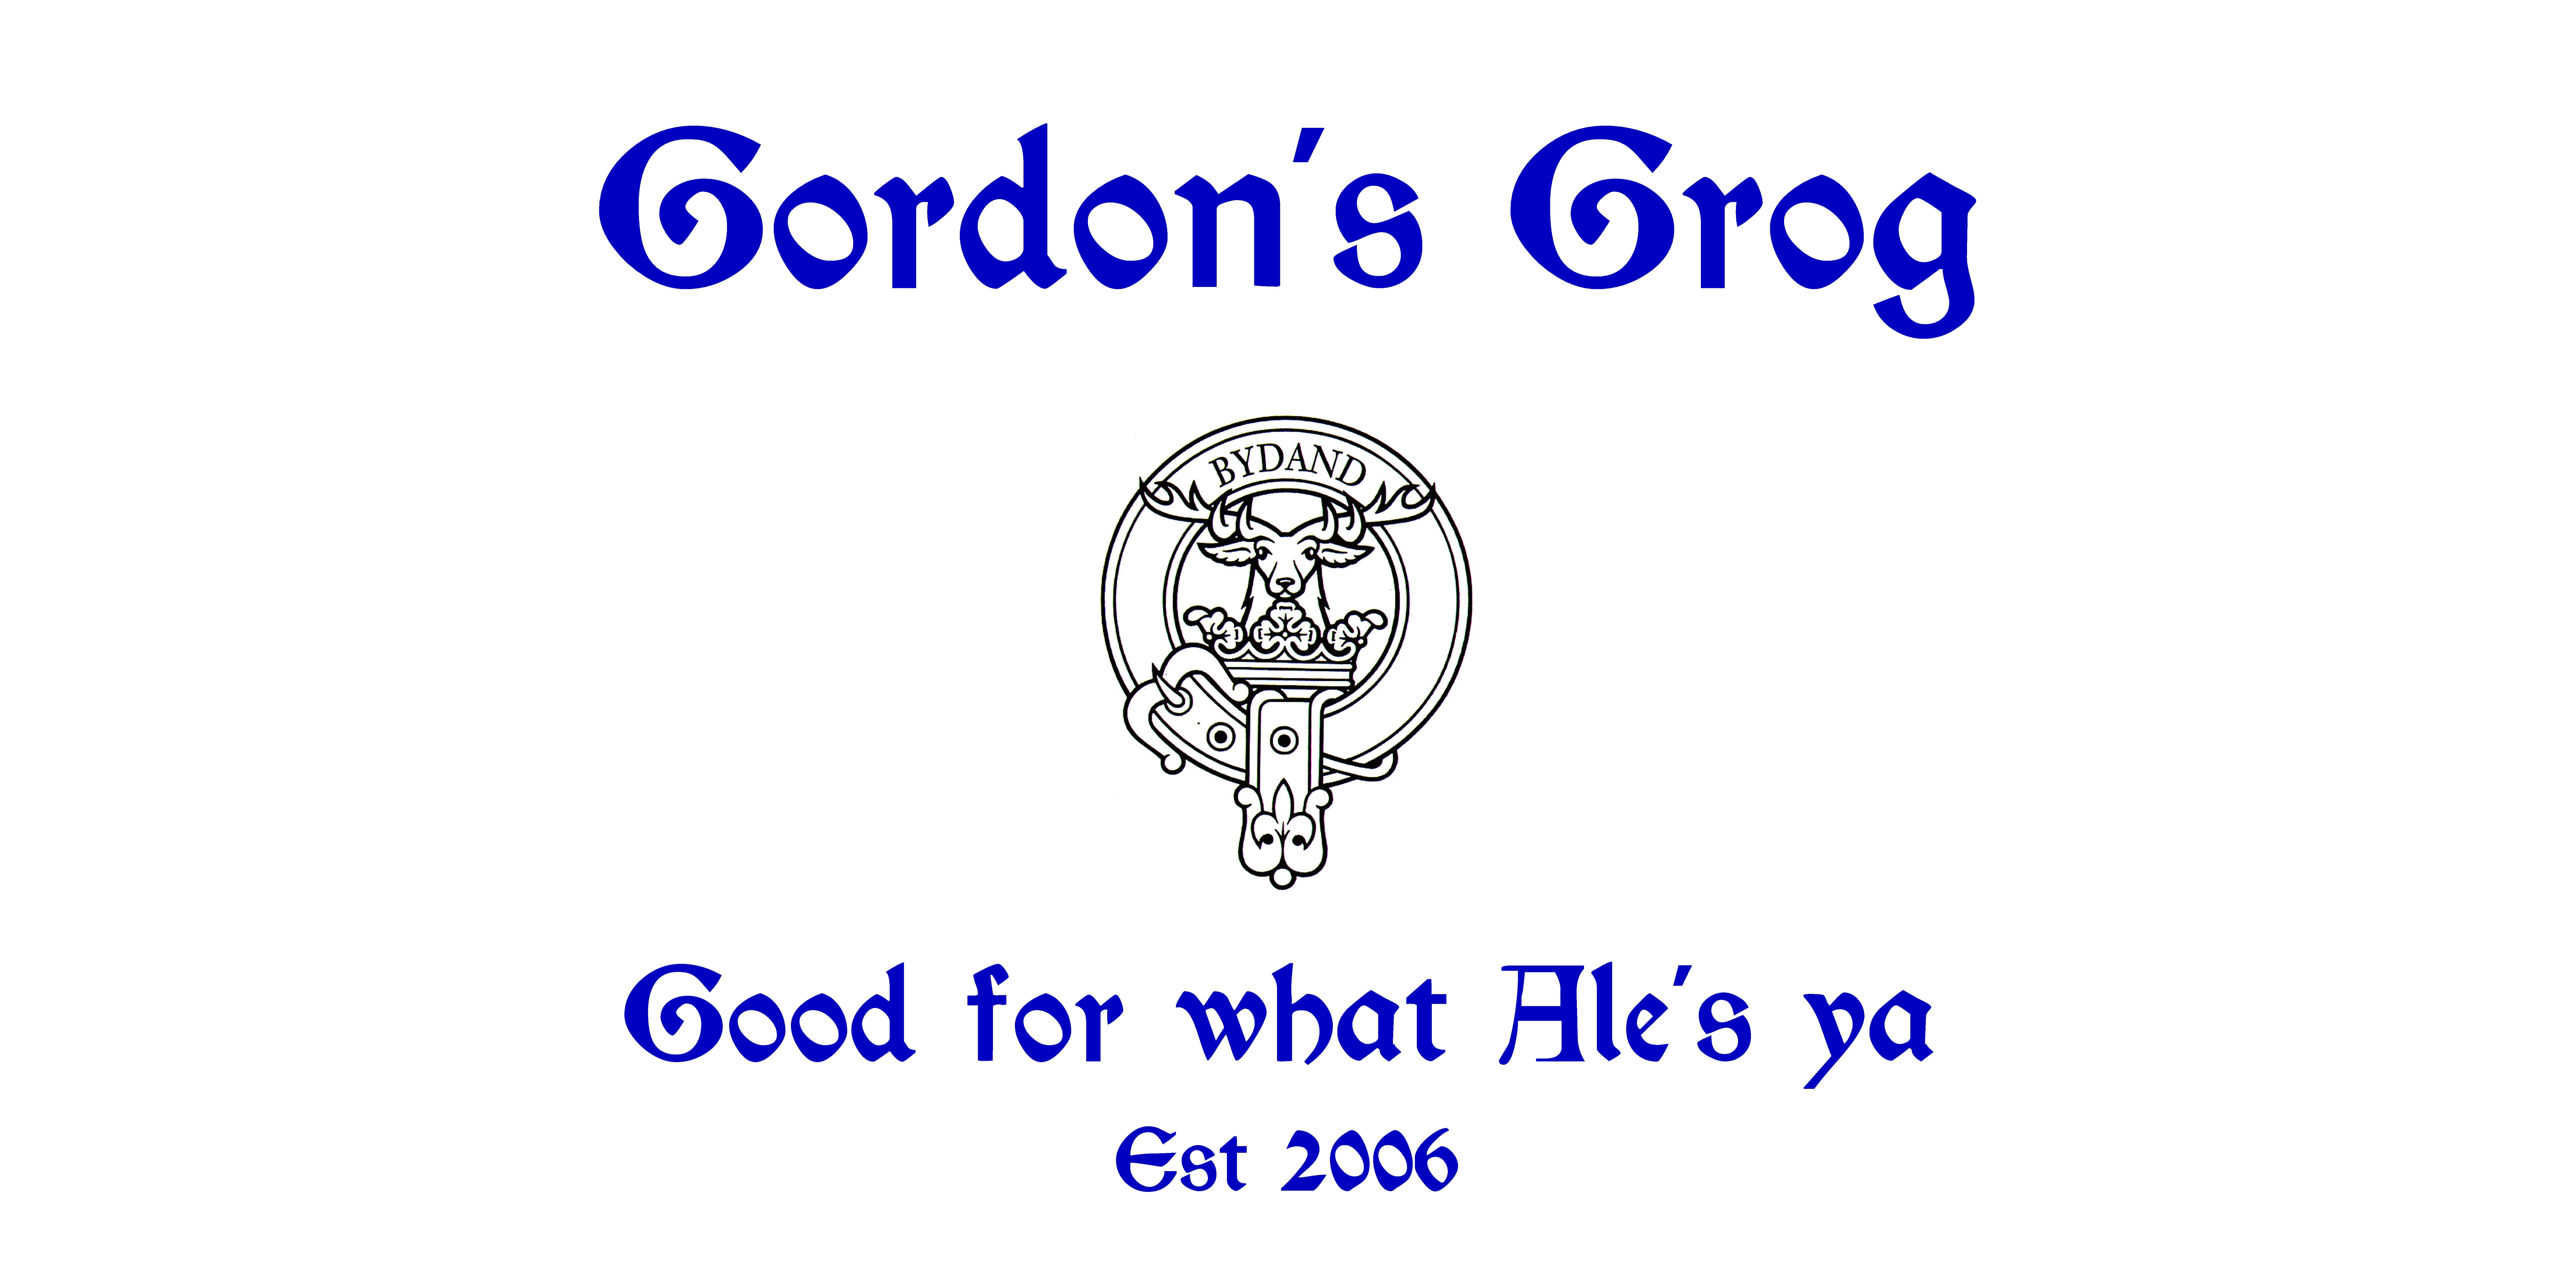 Gordon’s Grog